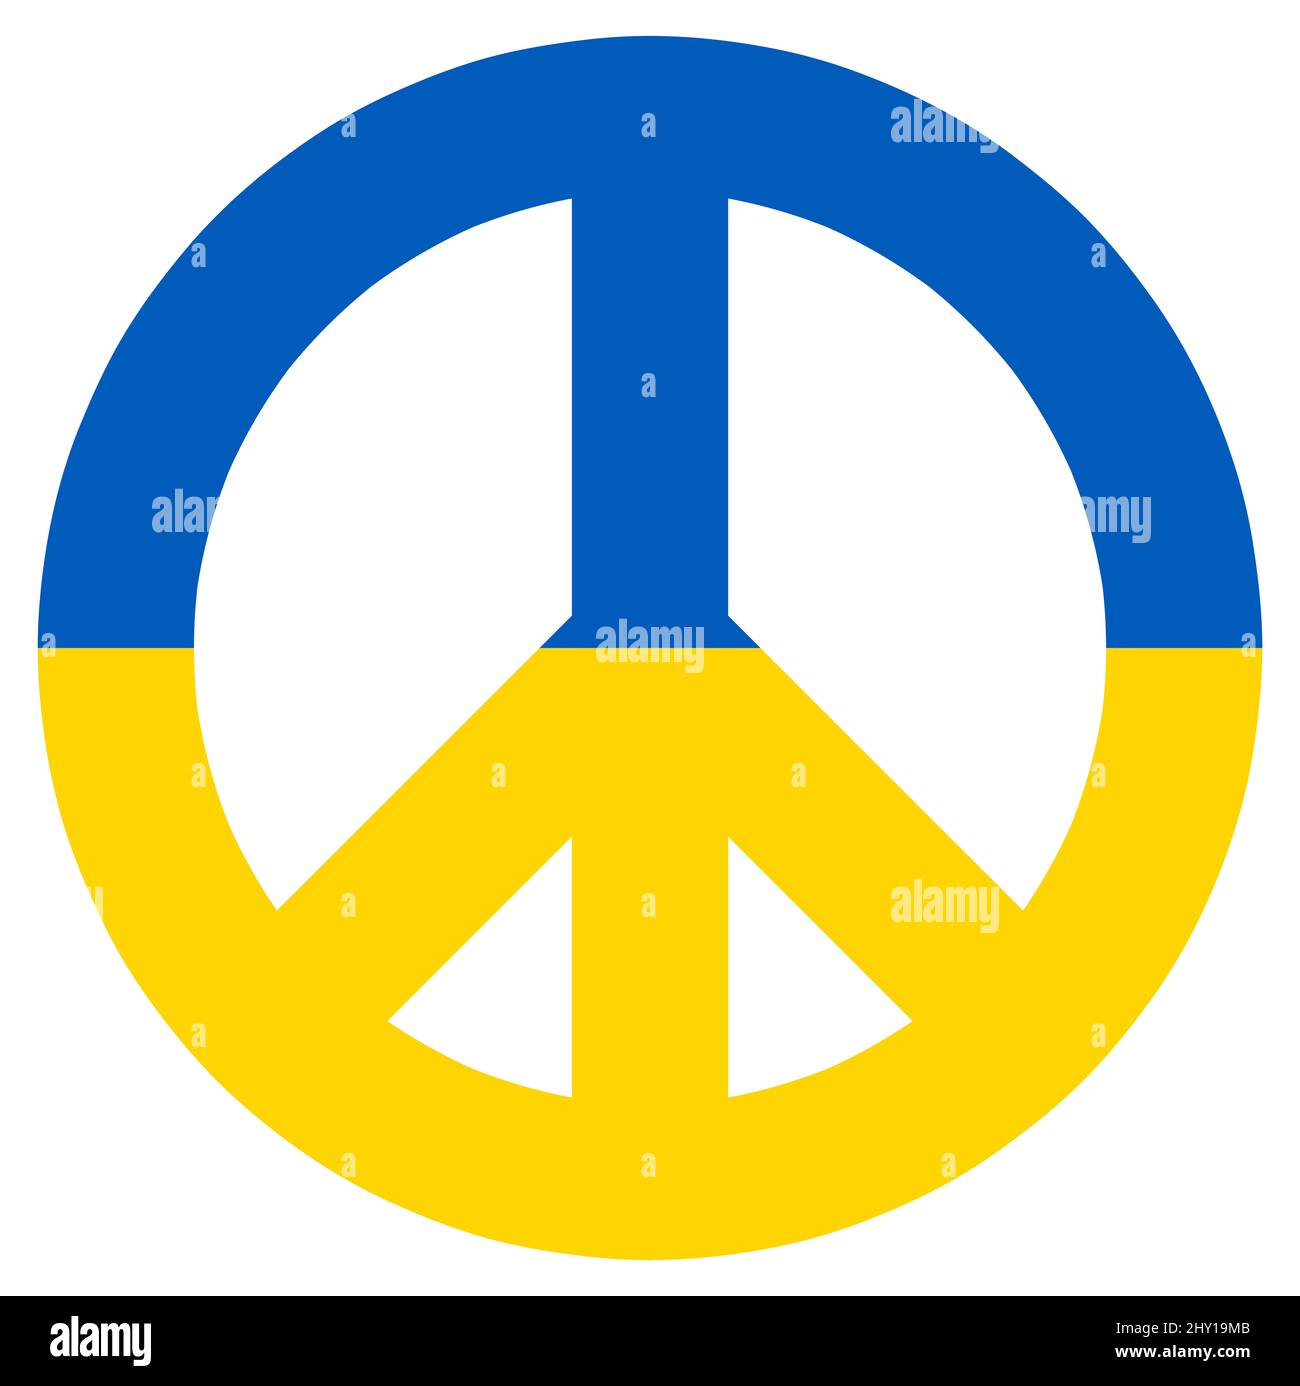 ilustración vectorial eps con signo de paz coloreado con colores de país de ucrania para el conflicto con rusia 2022 Foto de stock